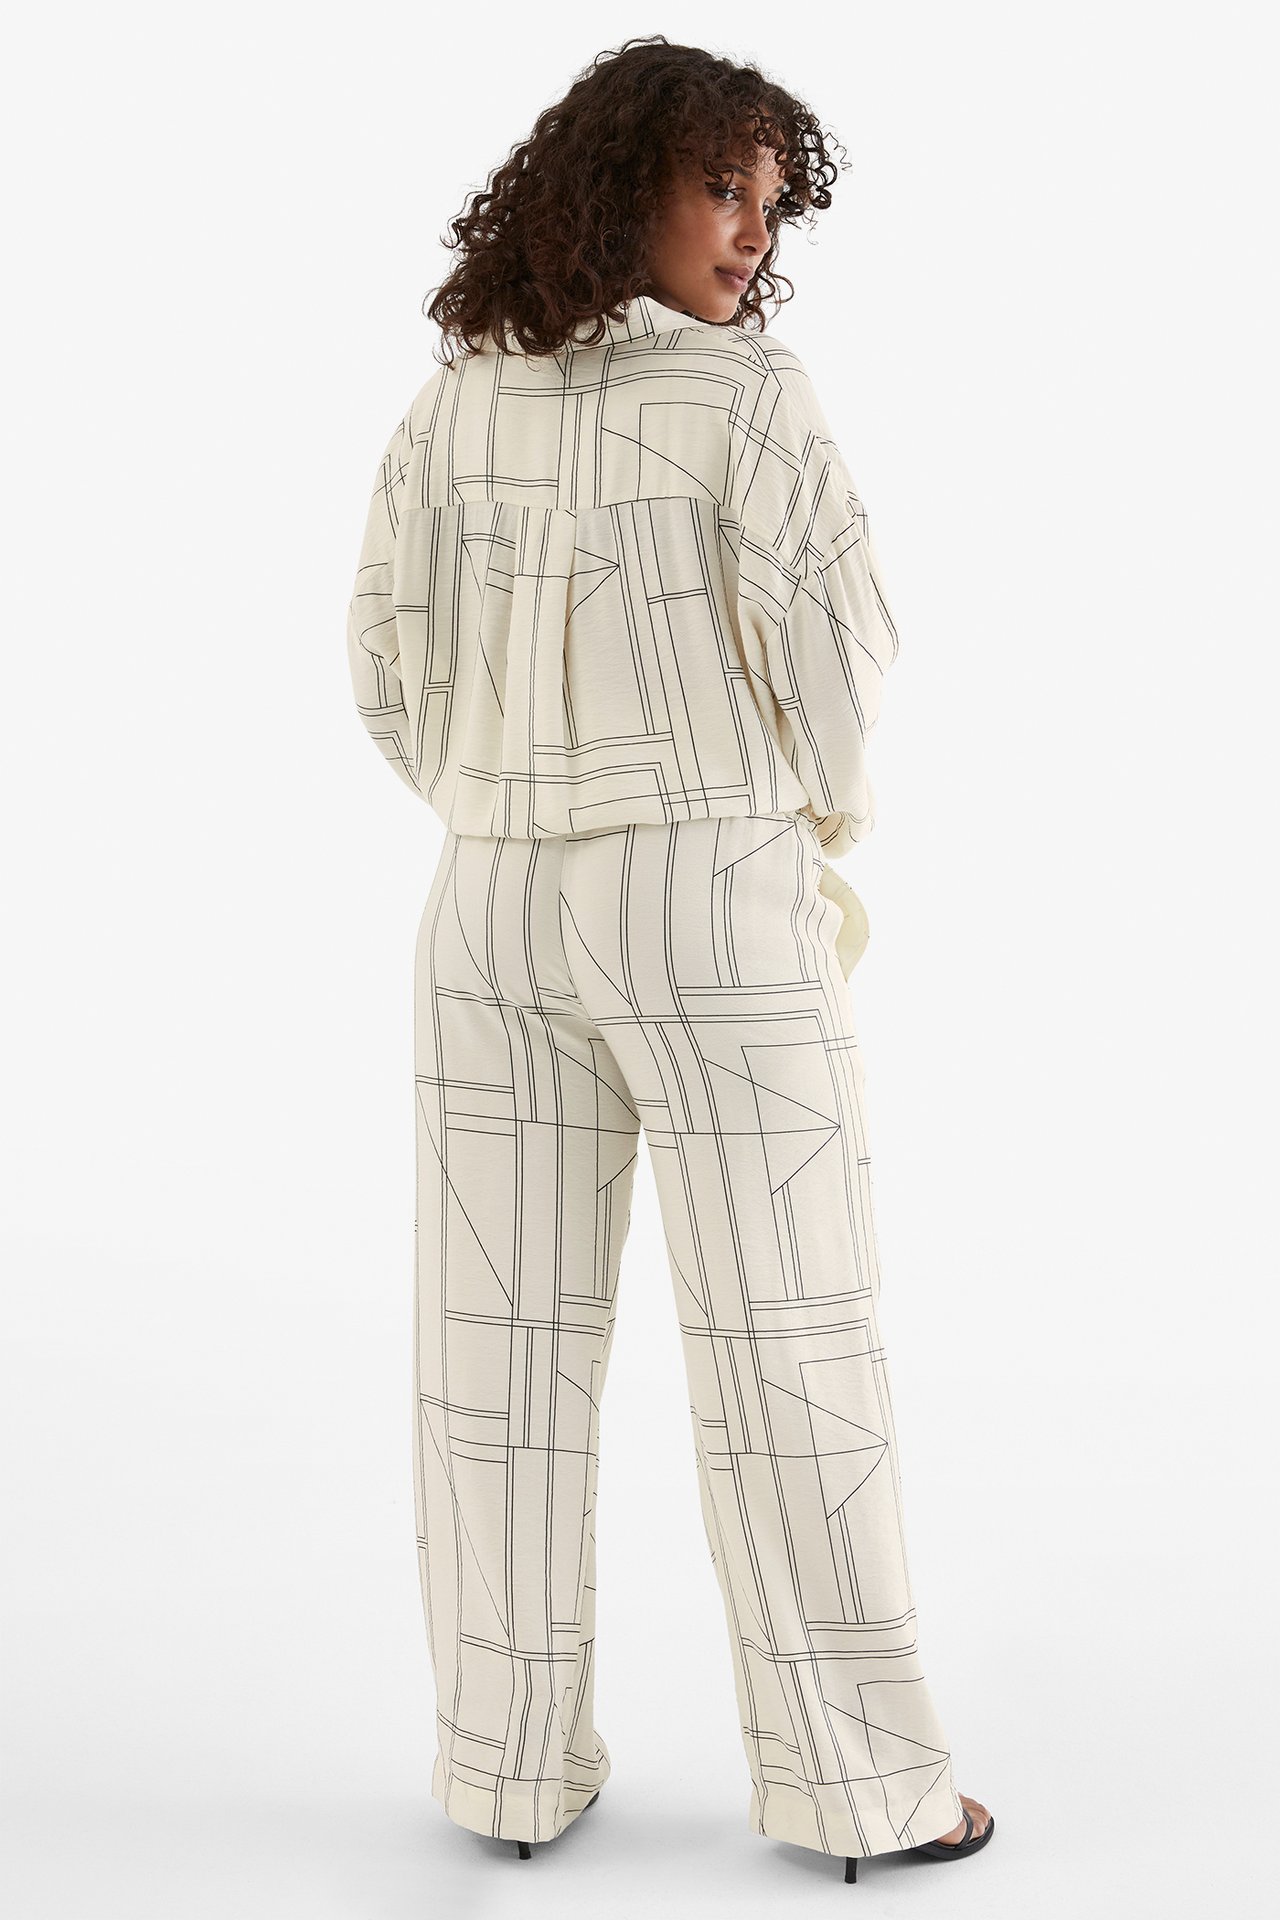 Spodnie wciągane - Offwhite - 168cm / Storlek: M - 5